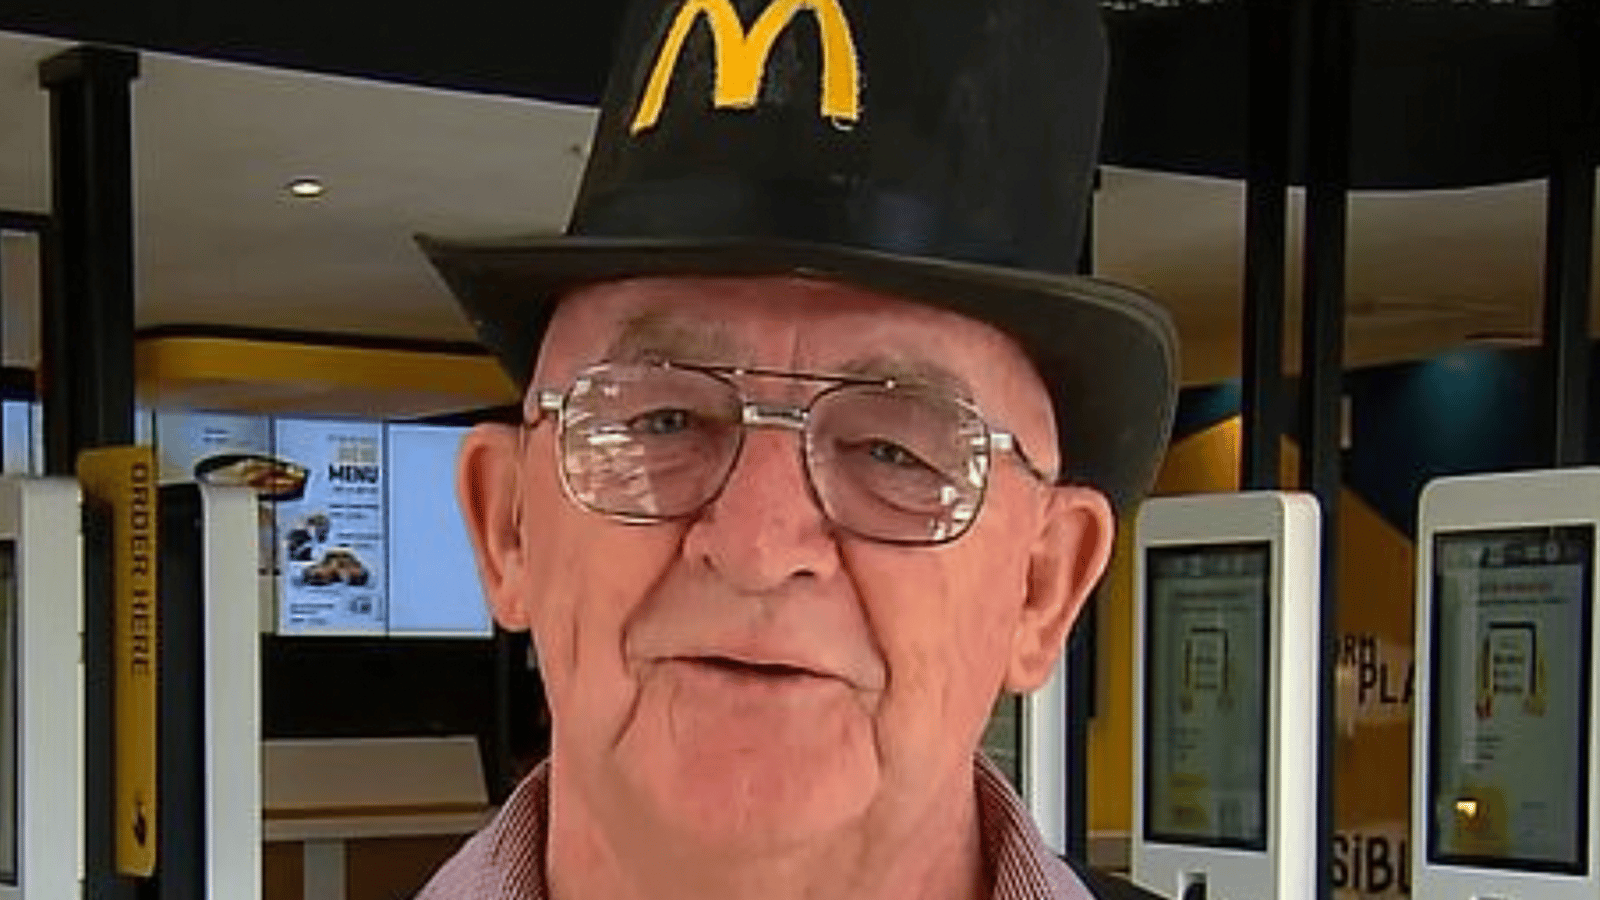 Un homme de 72 ans commence à travailler chez McDonald's parce qu'il s'ennuyait à la retraite